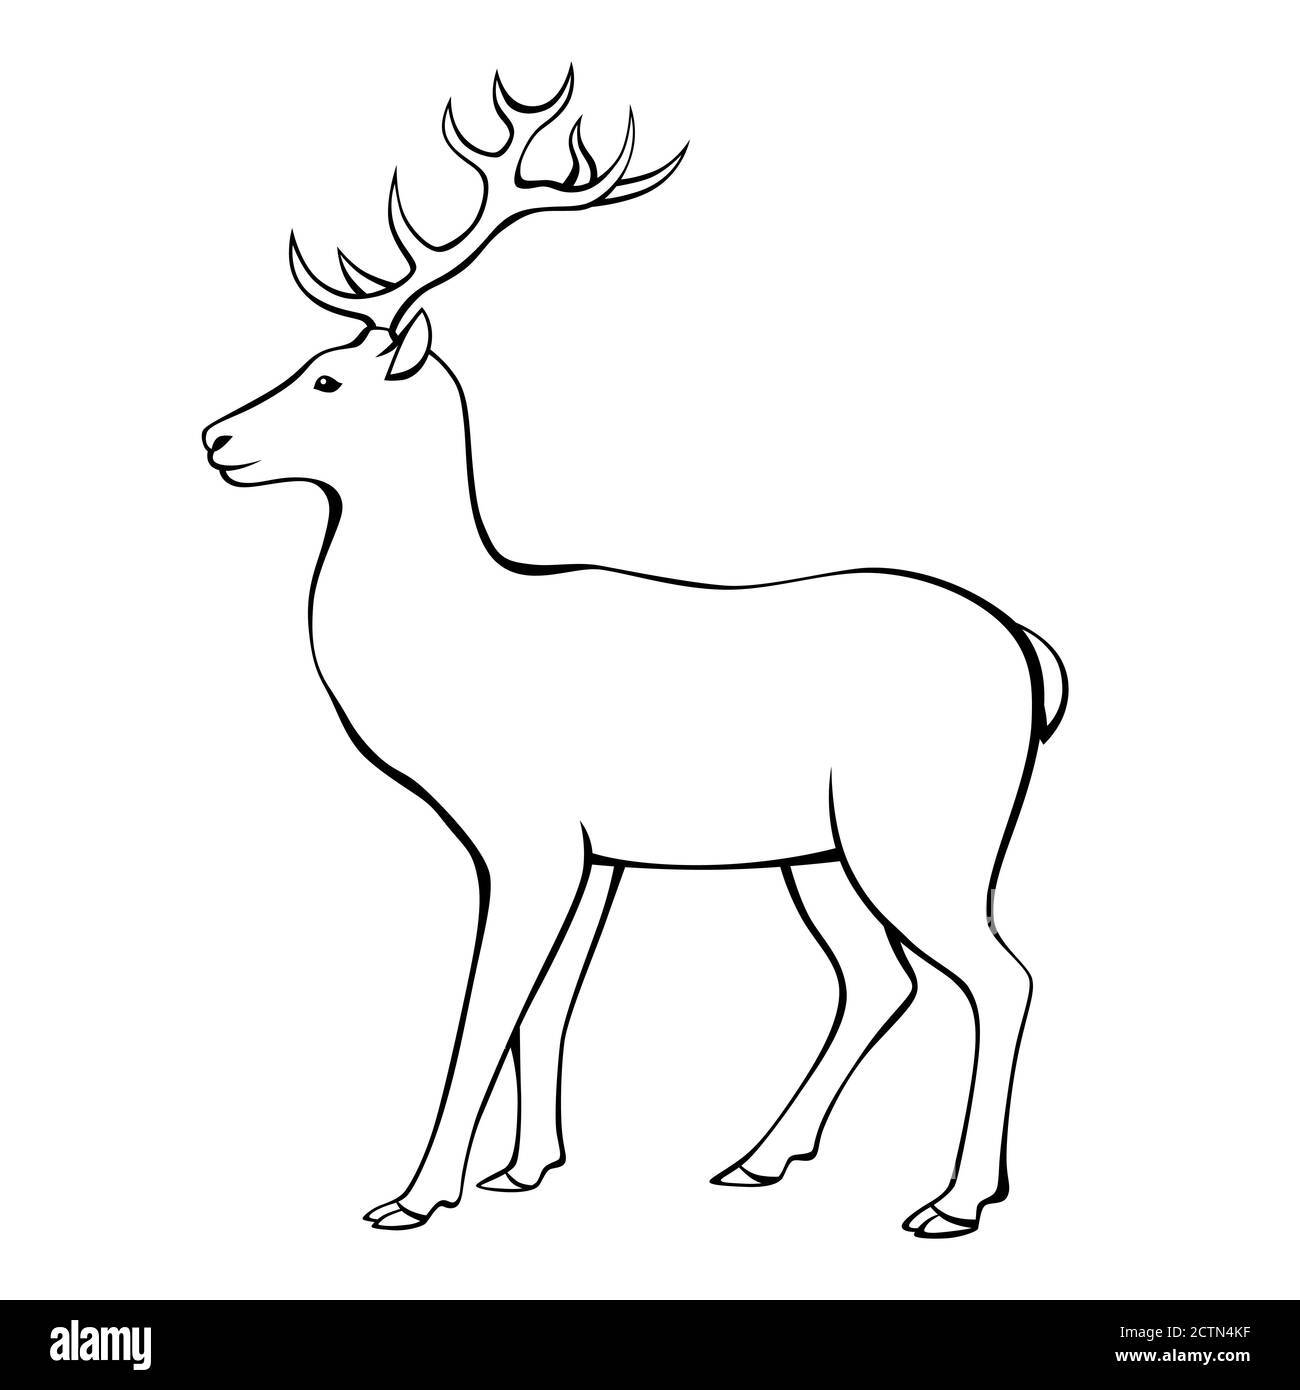 Deer horns animal black white isolated illustration vector Stock Vector